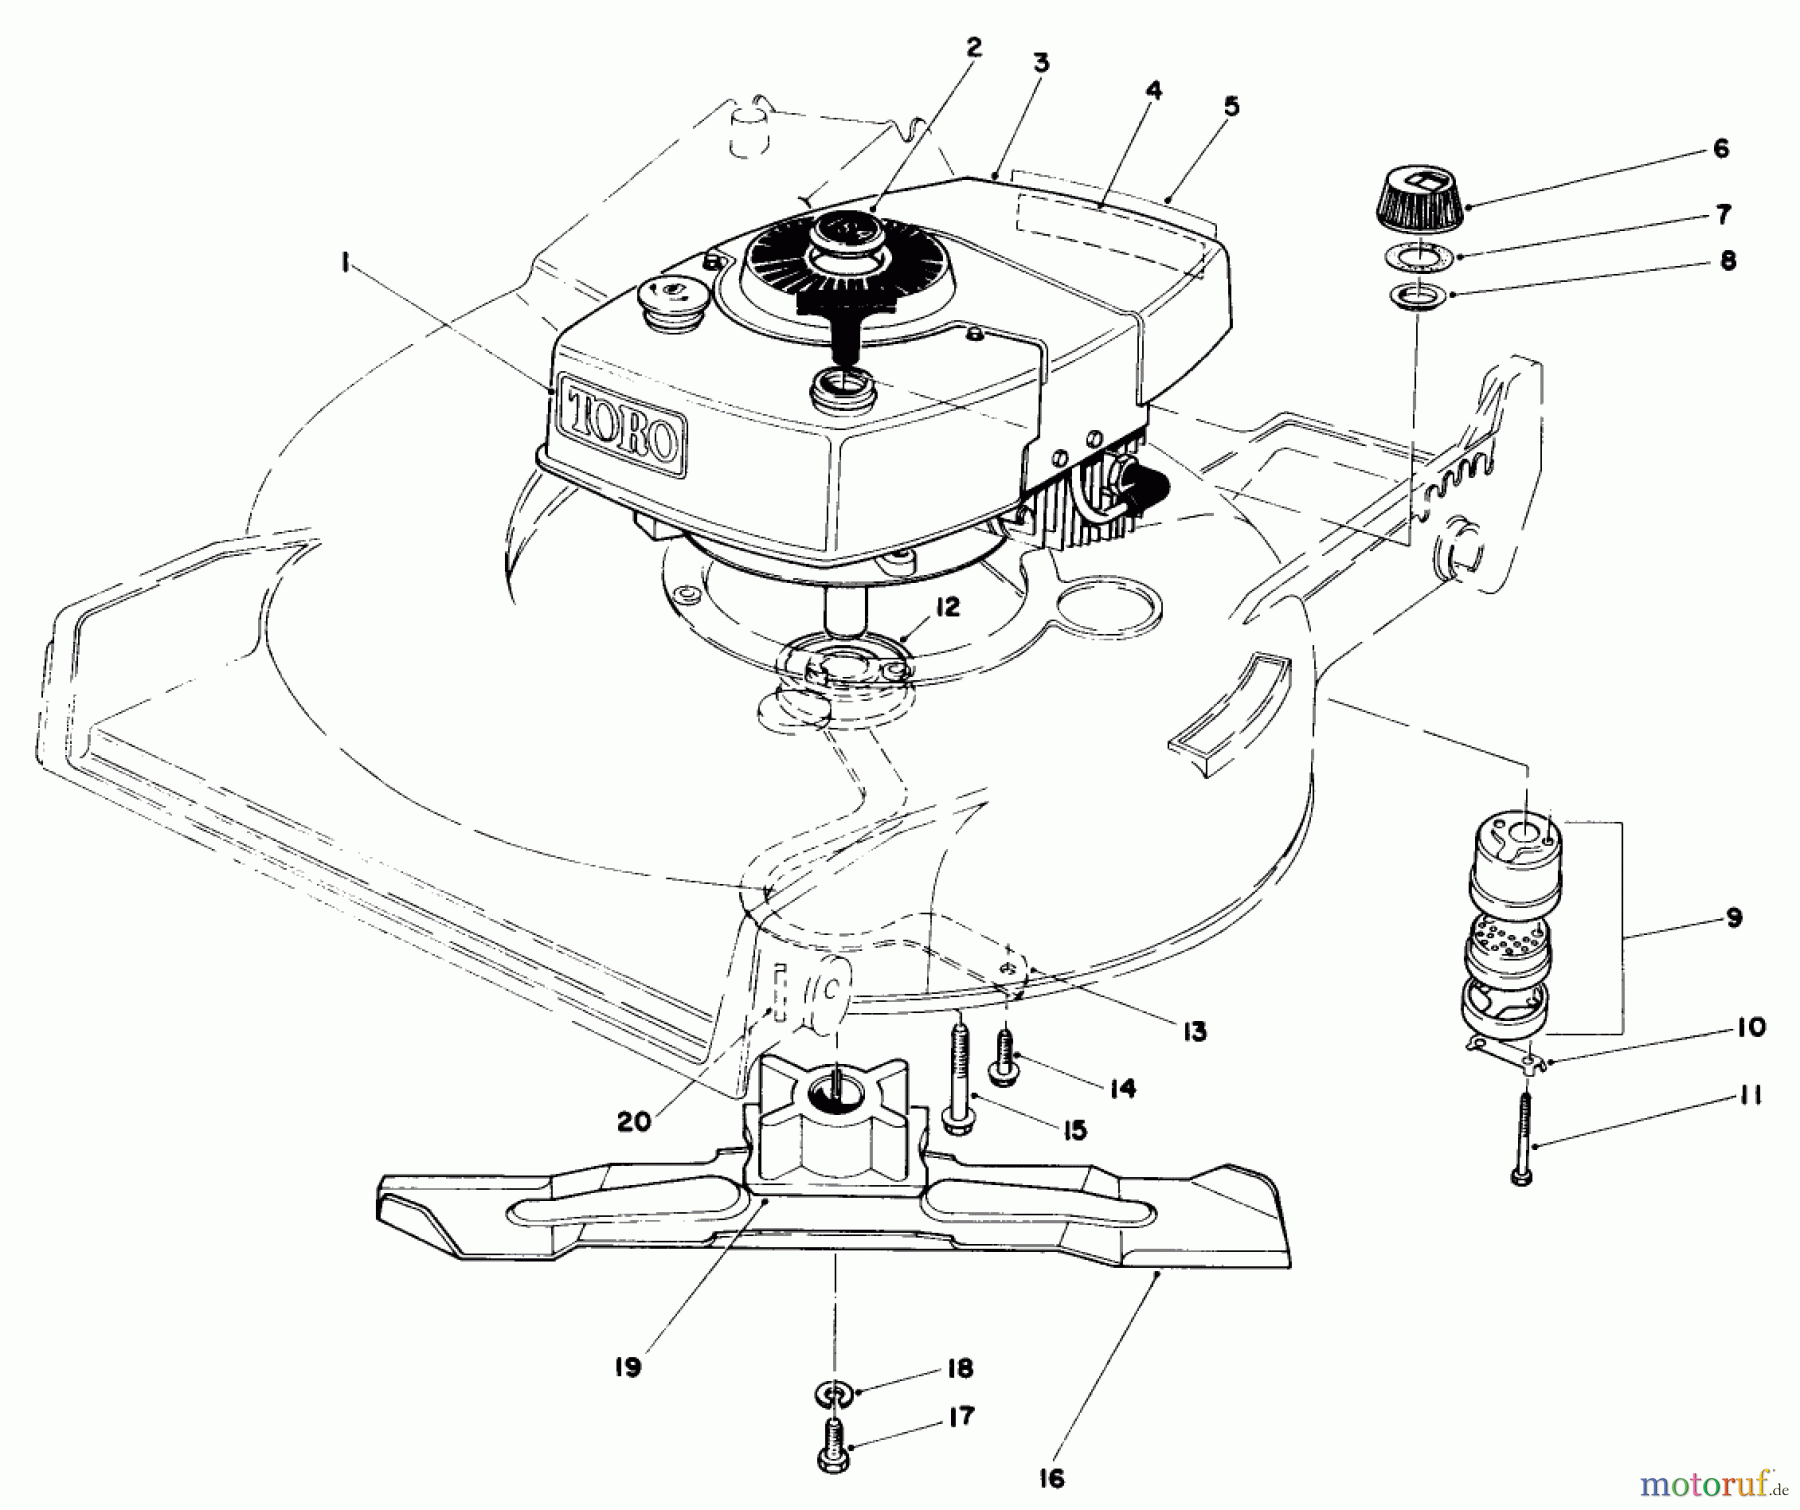  Toro Neu Mowers, Walk-Behind Seite 1 20810 - Toro Lawnmower, 1984 (4000001-4999999) ENGINE ASSEMBLY